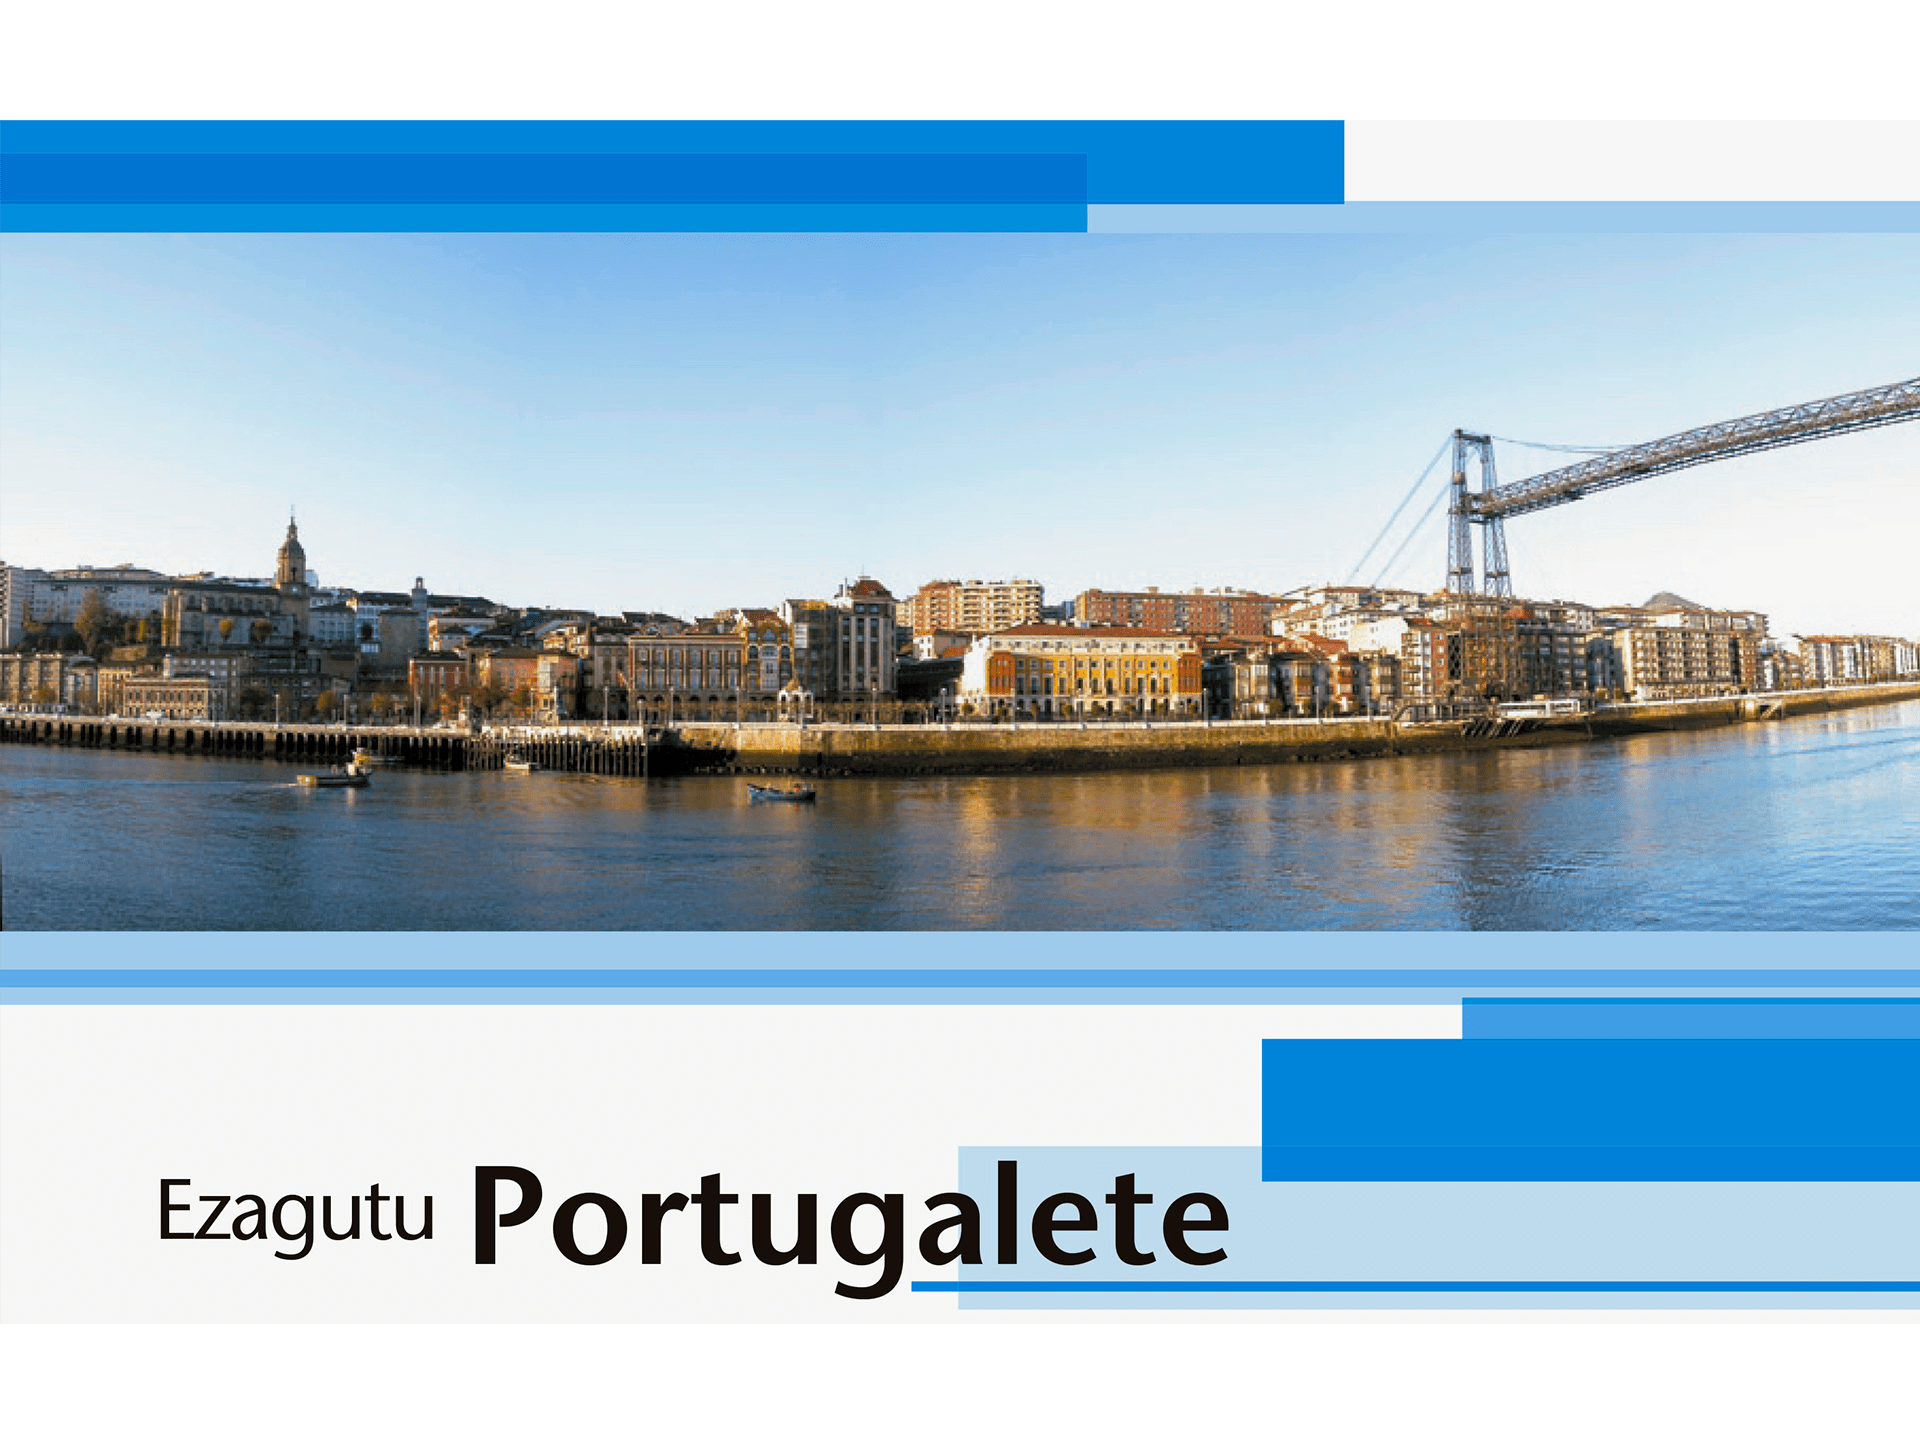 Ezagutu Portugalete